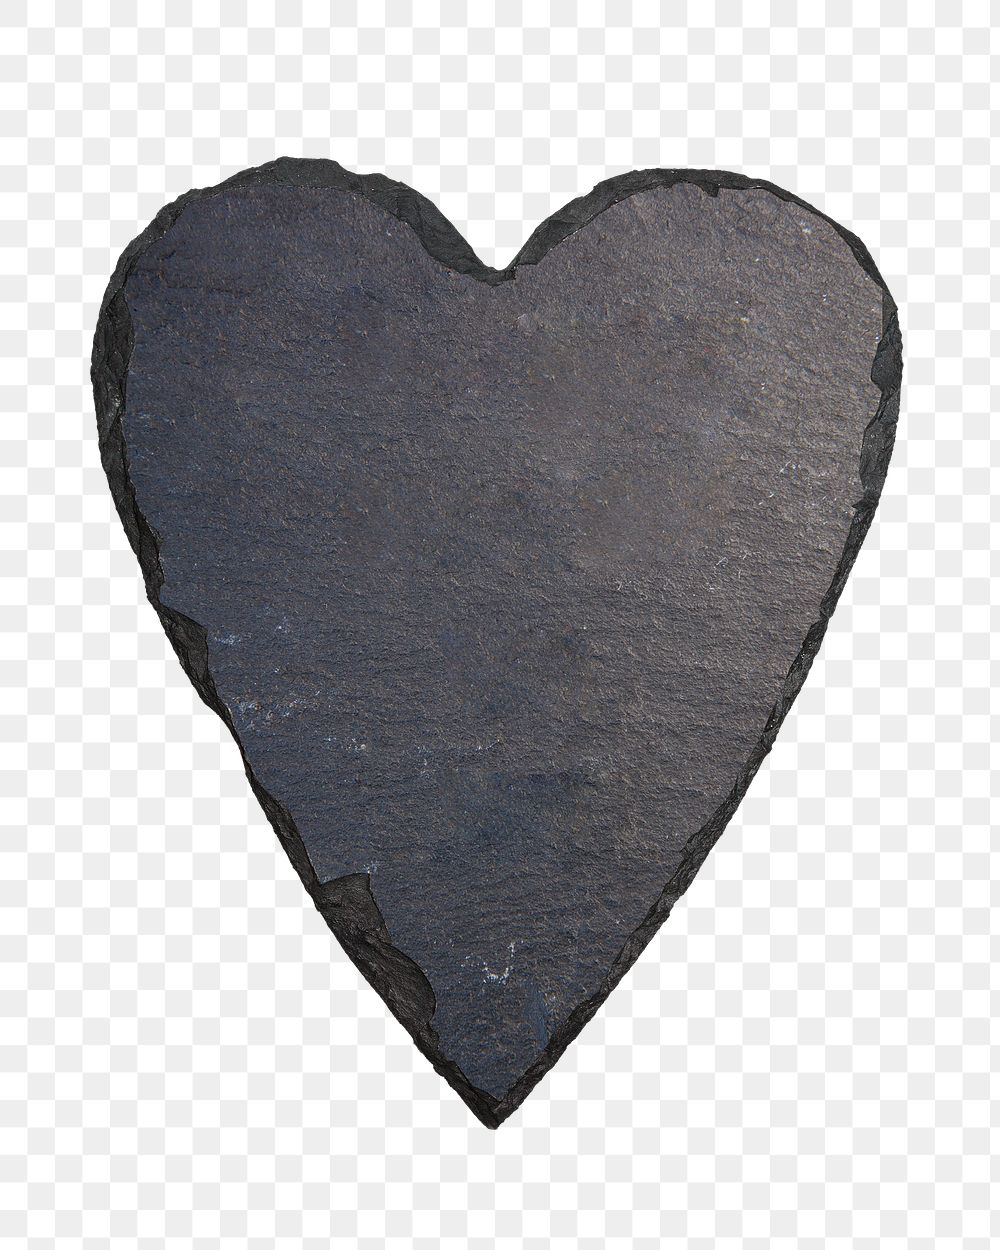 Black heart png sticker, transparent background